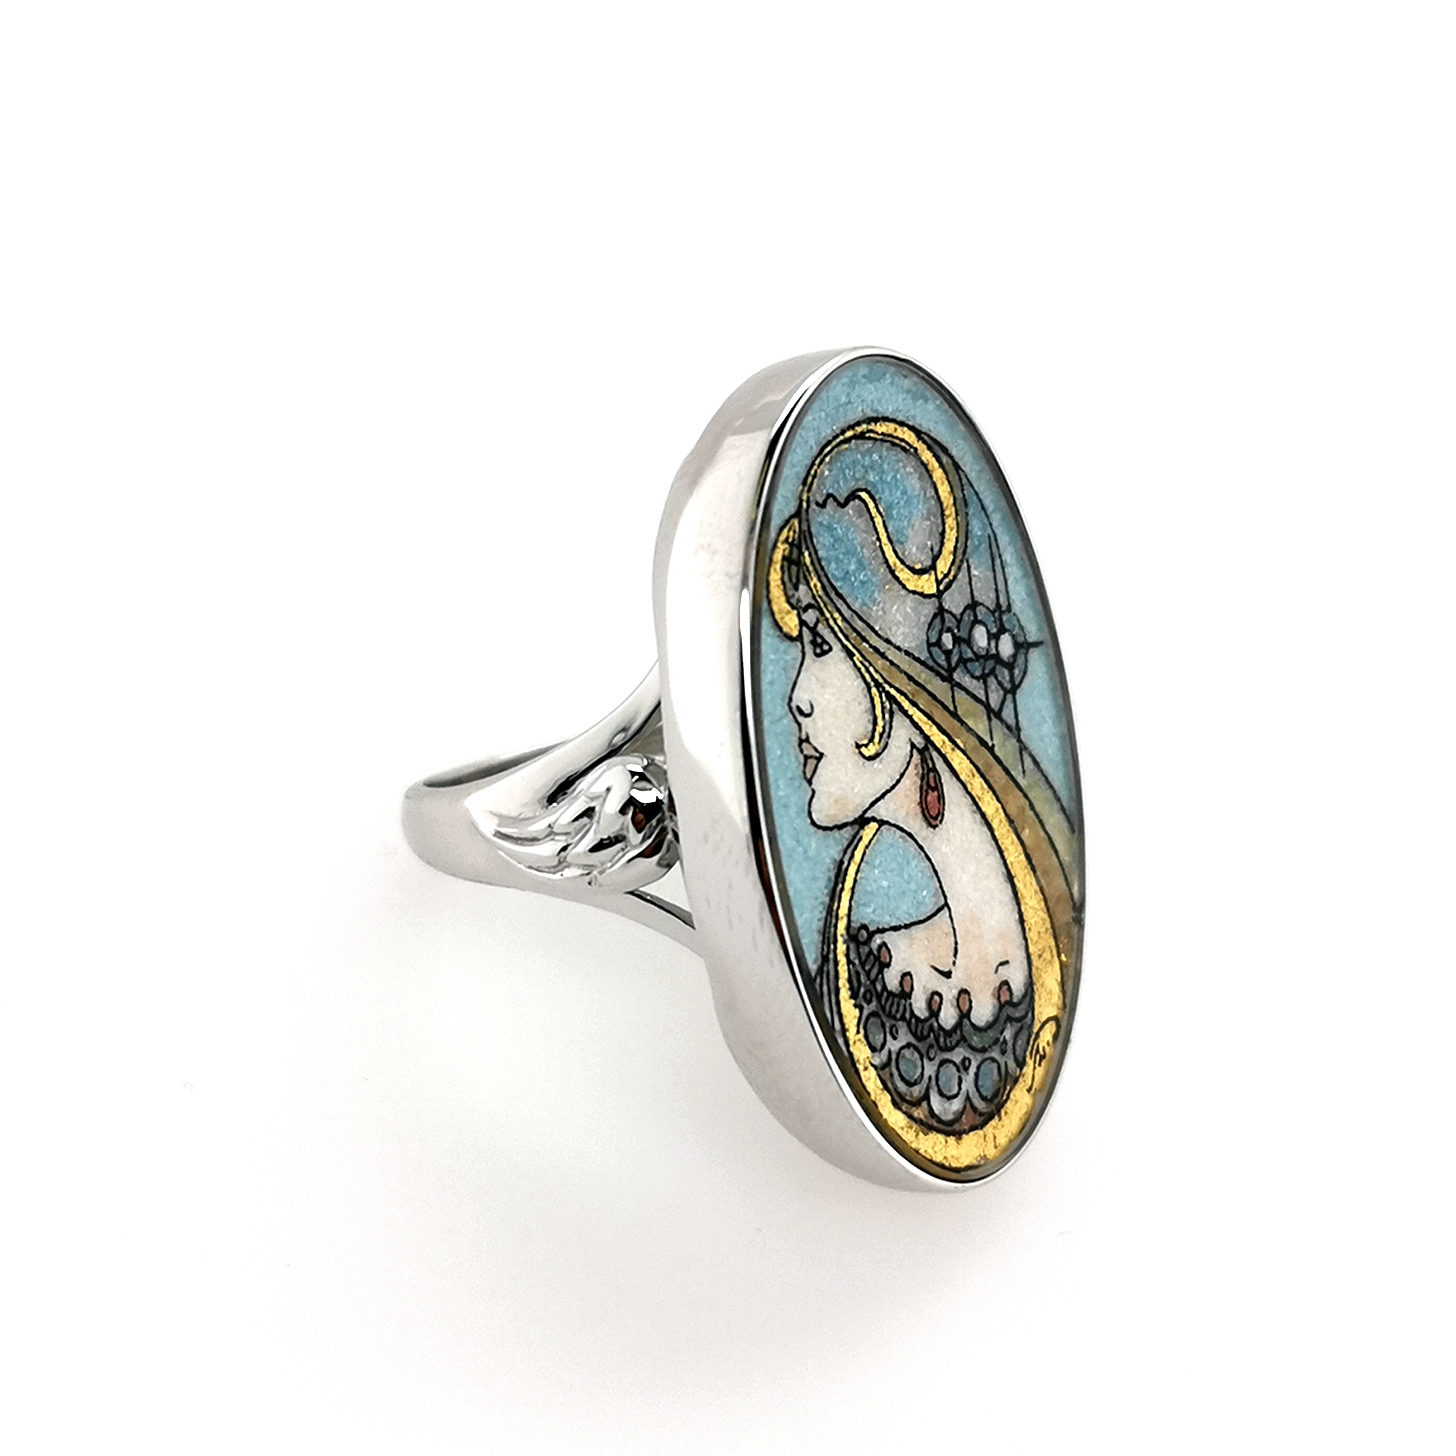 Engel der Unendlichkeit / Angel of Eternity - Edelsteingemälde - Ring in 925 Sterling Silber, rhod.